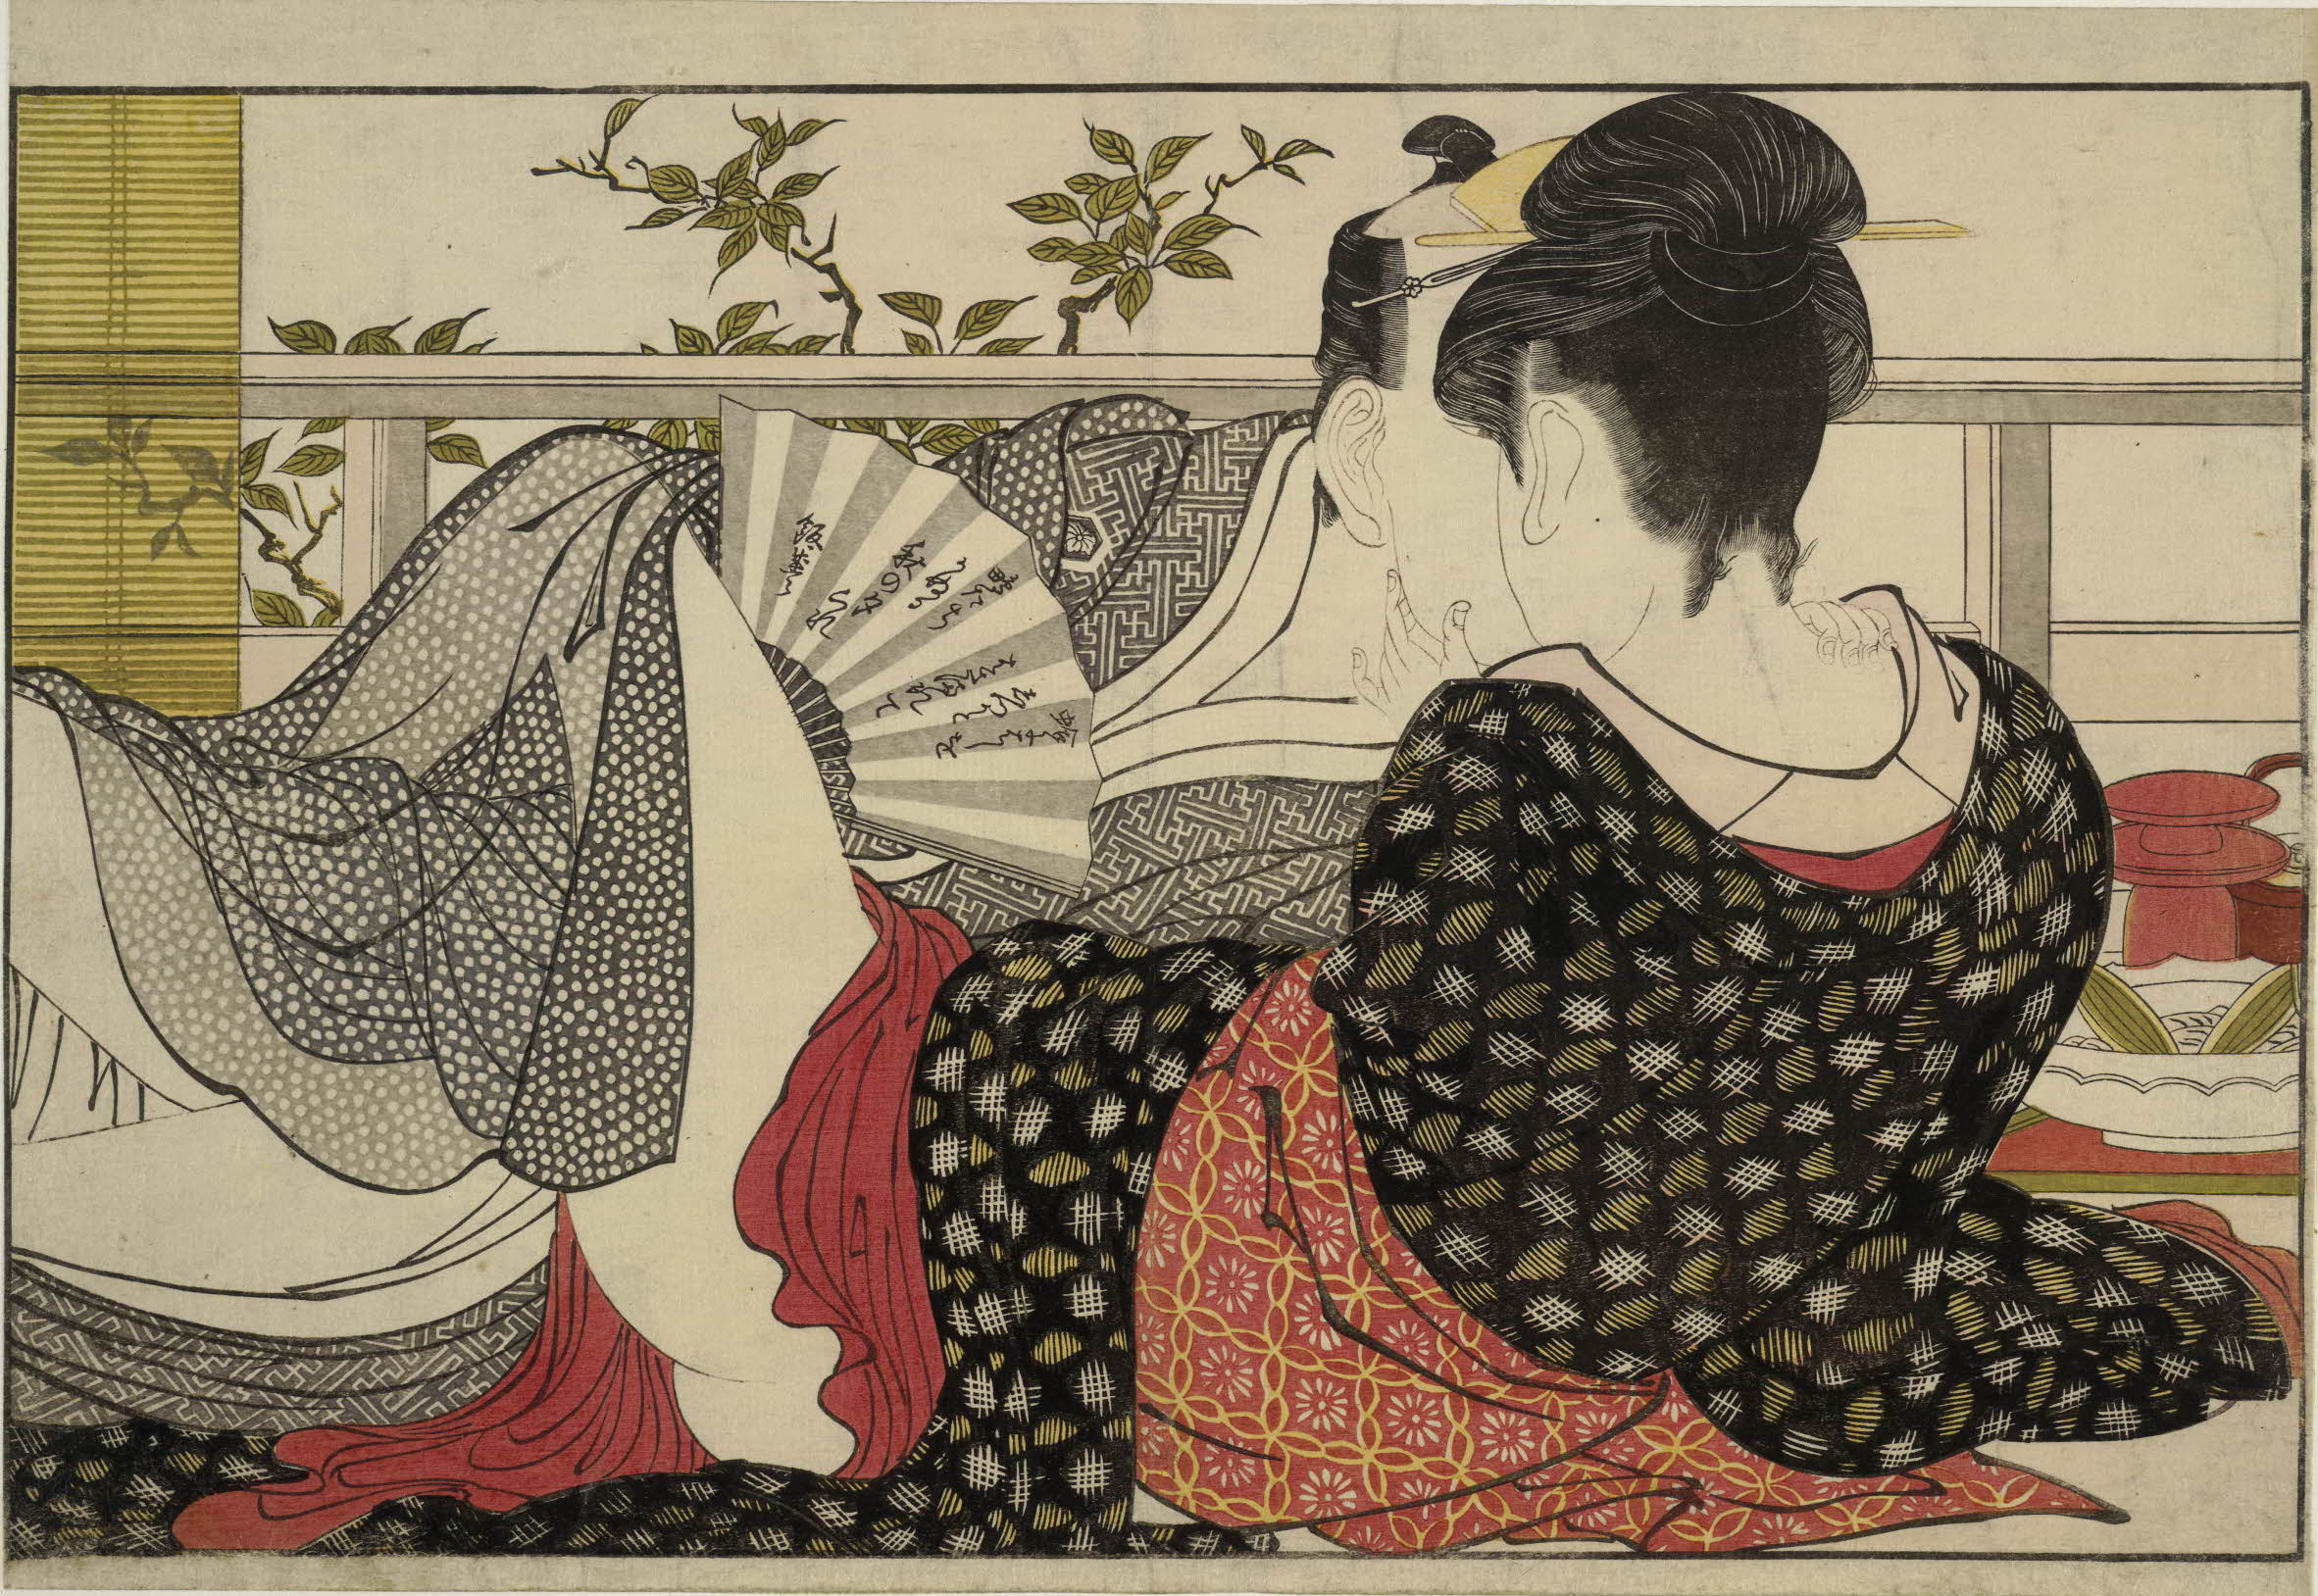 उतमकुरा (तकिये की कविता) by Kitagawa Utamaro - १७८८ - २५४ x ३६९ मिमि 